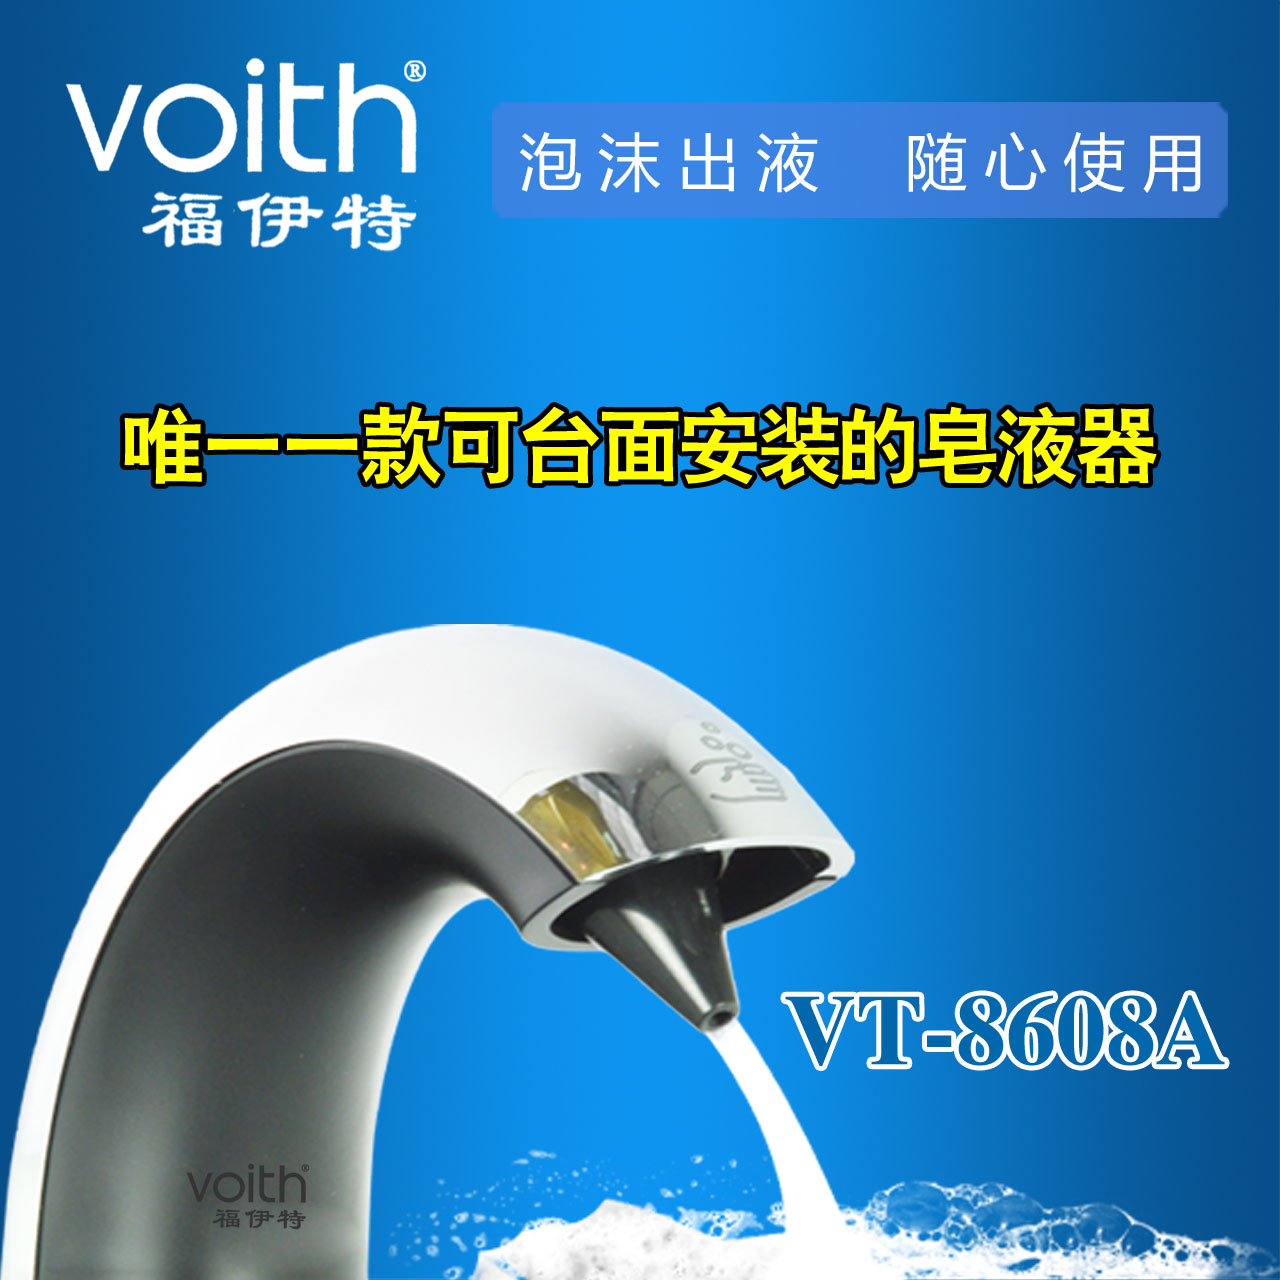 山东Voith福伊特高端新品-龙头式全自动感应给皂液器